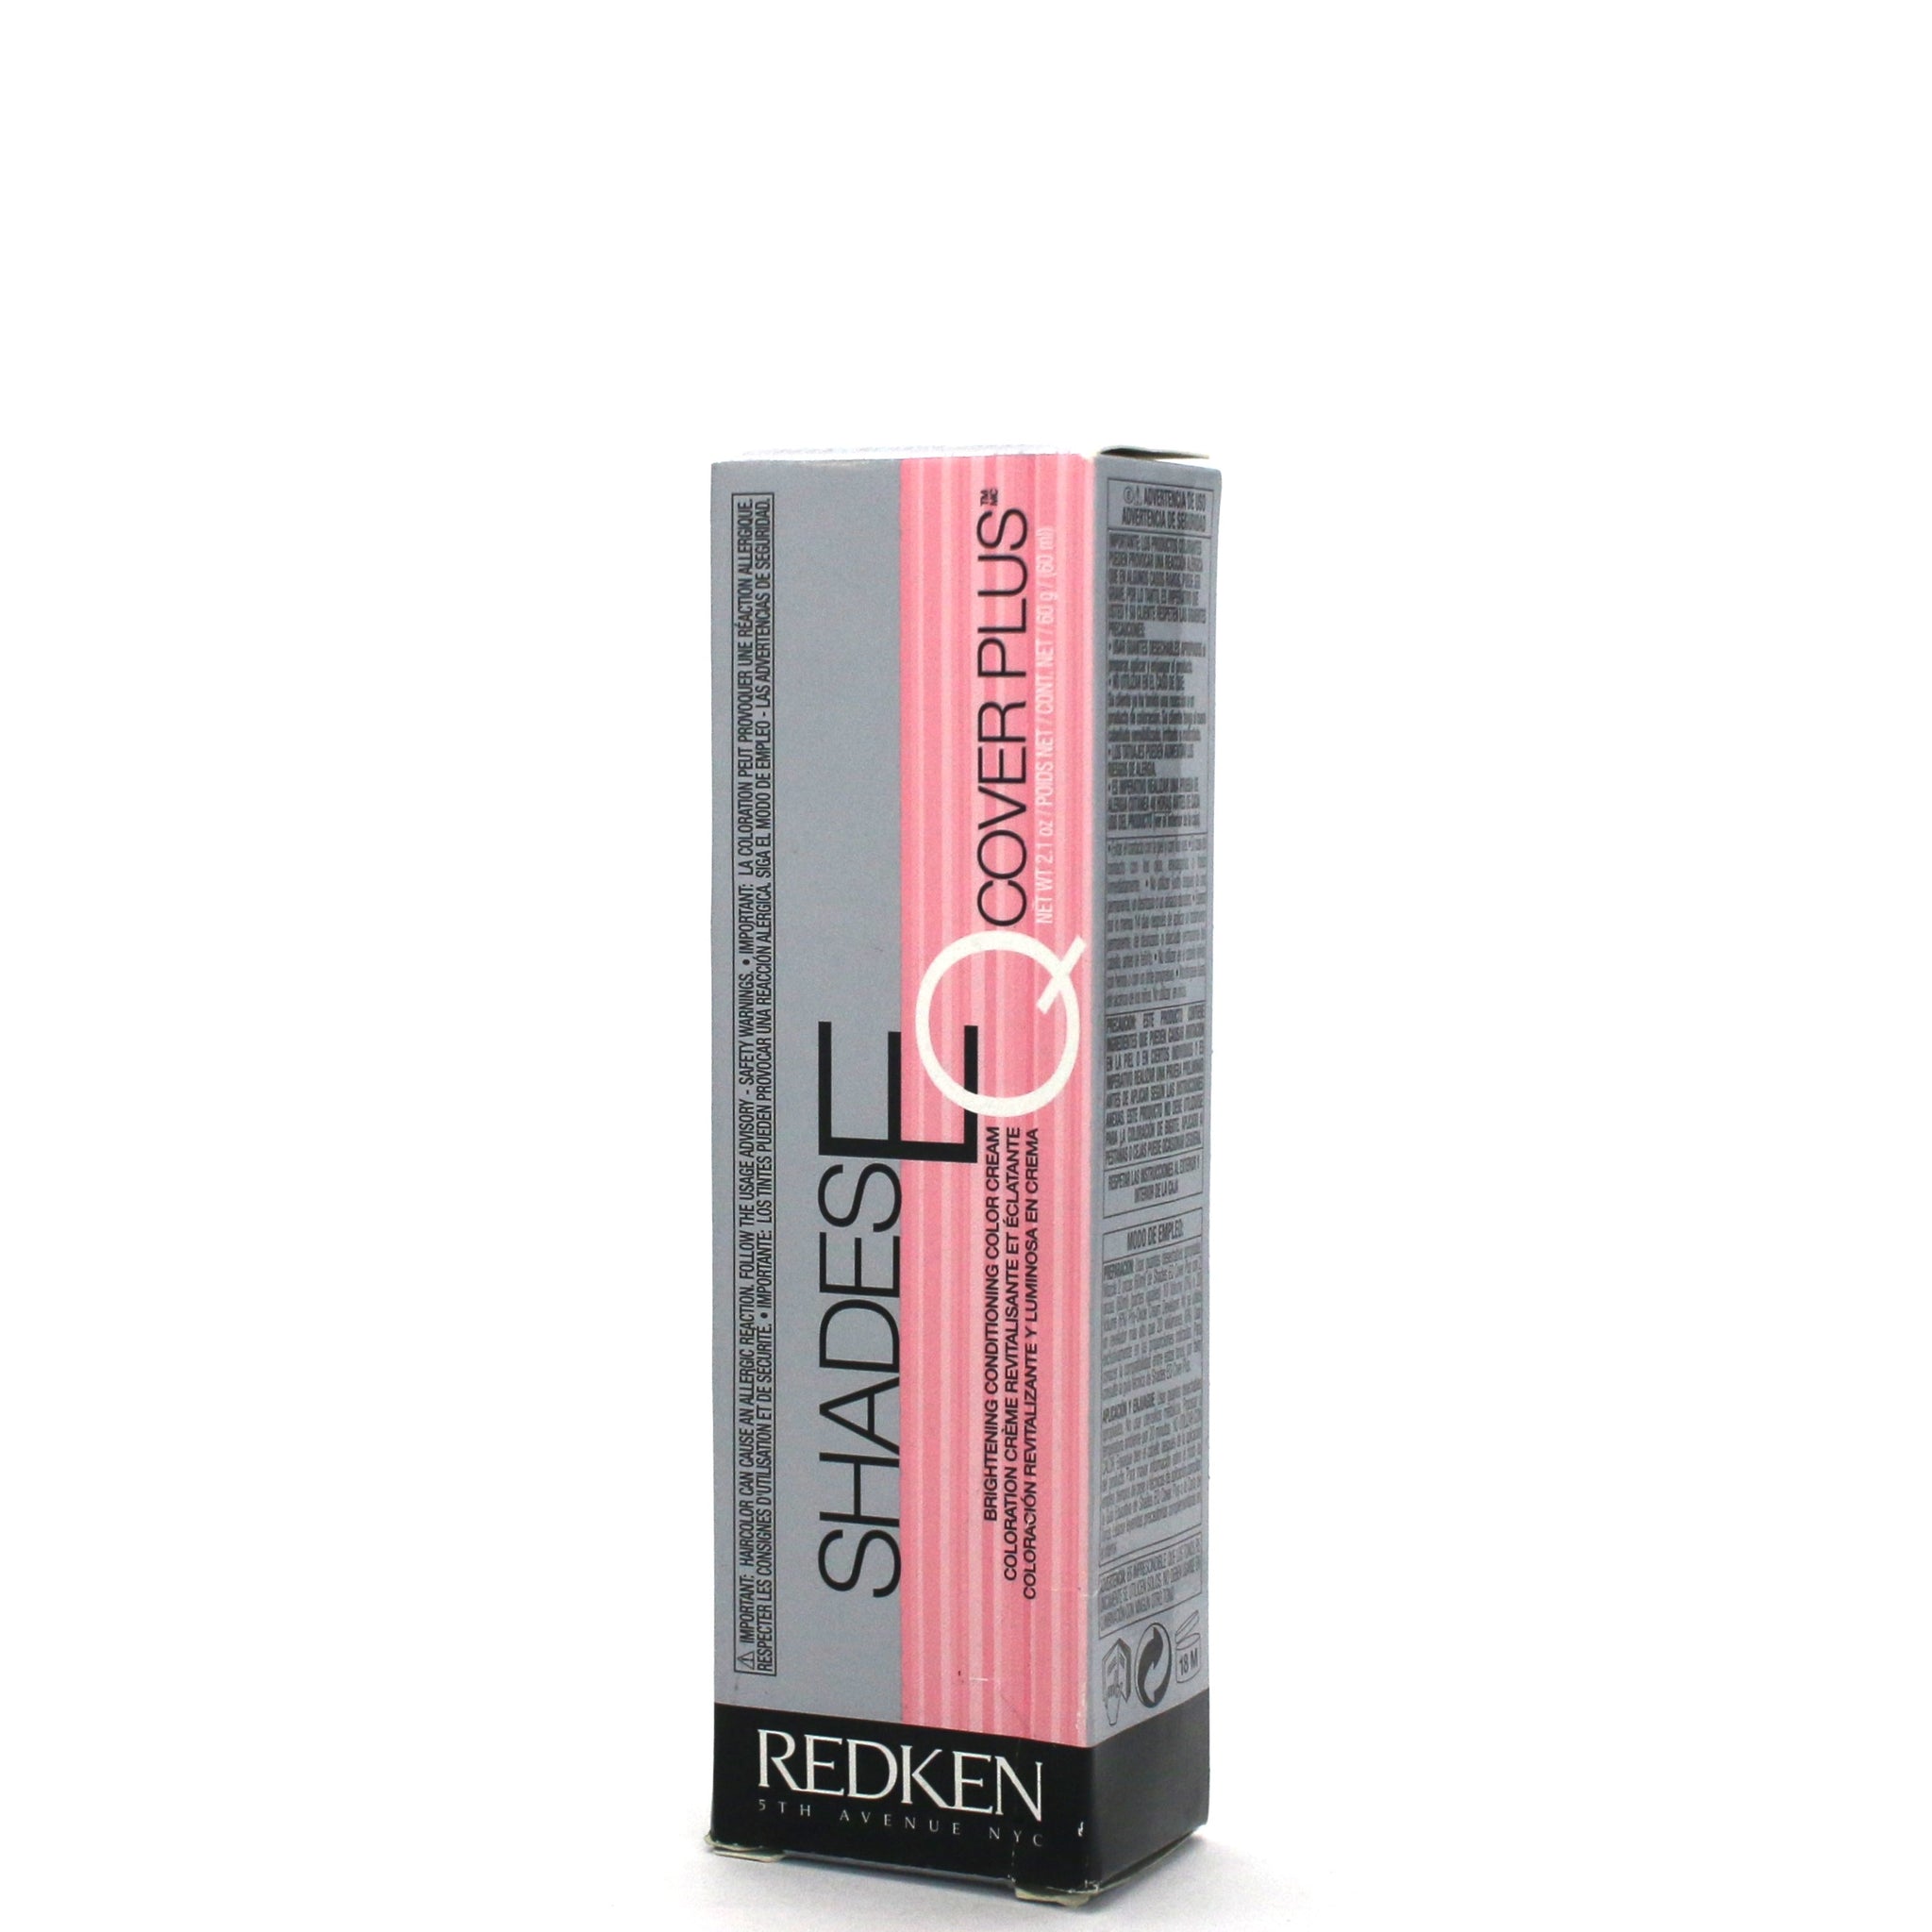 REDKEN Shades Eq Cover Plus Brightening Conditioning Color Cream 2.1 oz